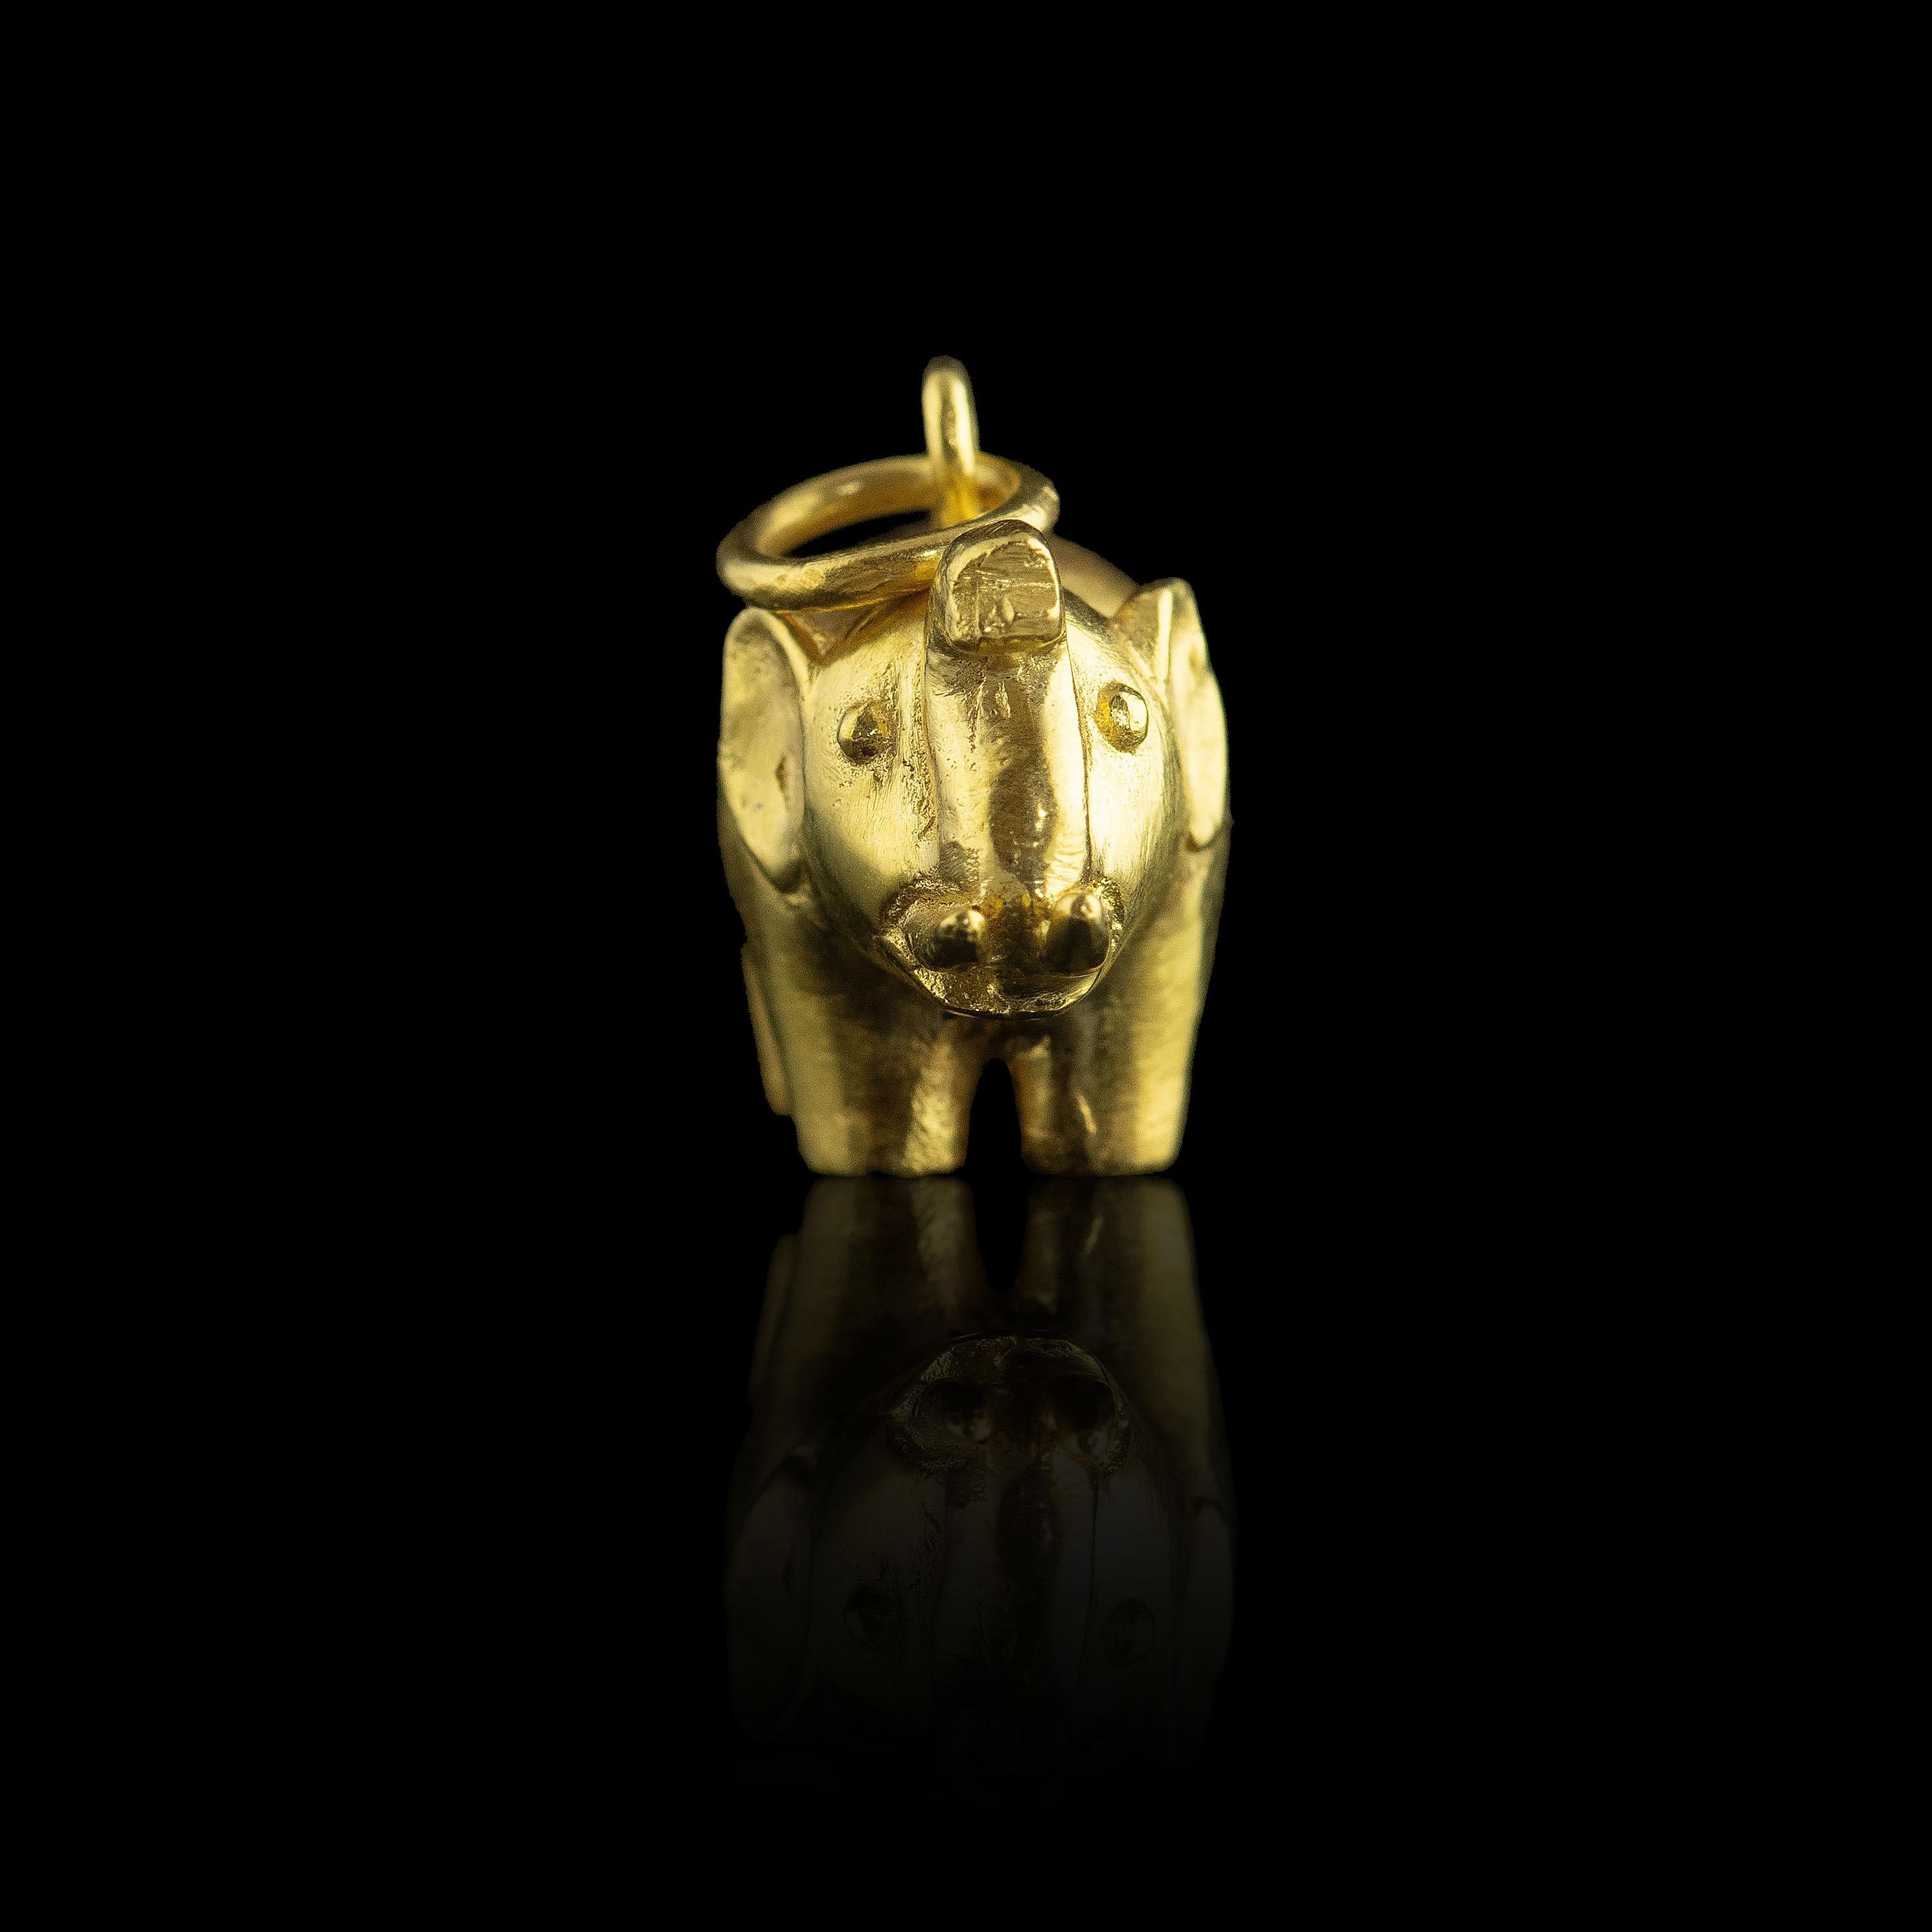 gold elephant necklace